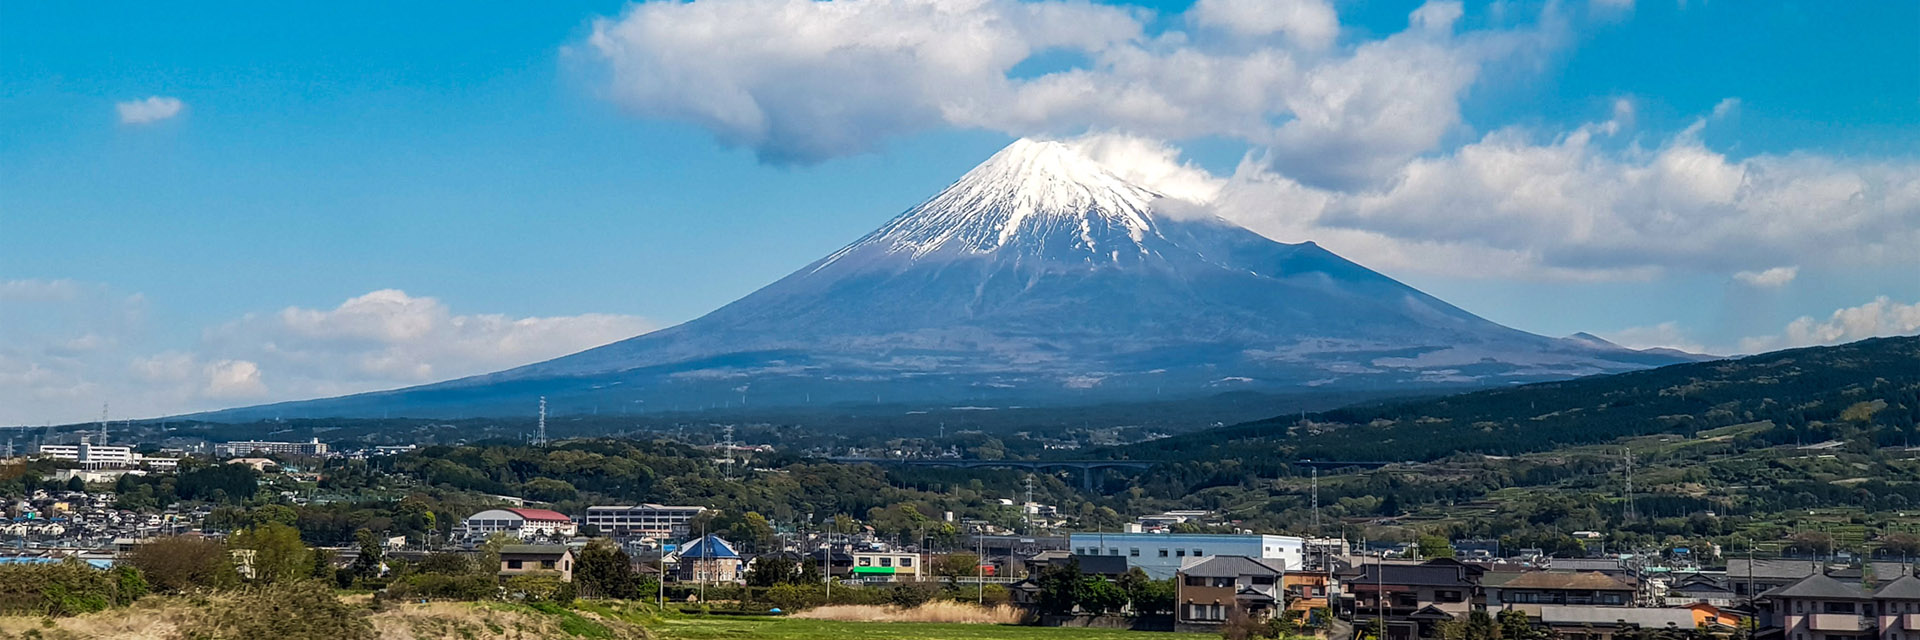 Japão: Monte Fuji visto do trem bala